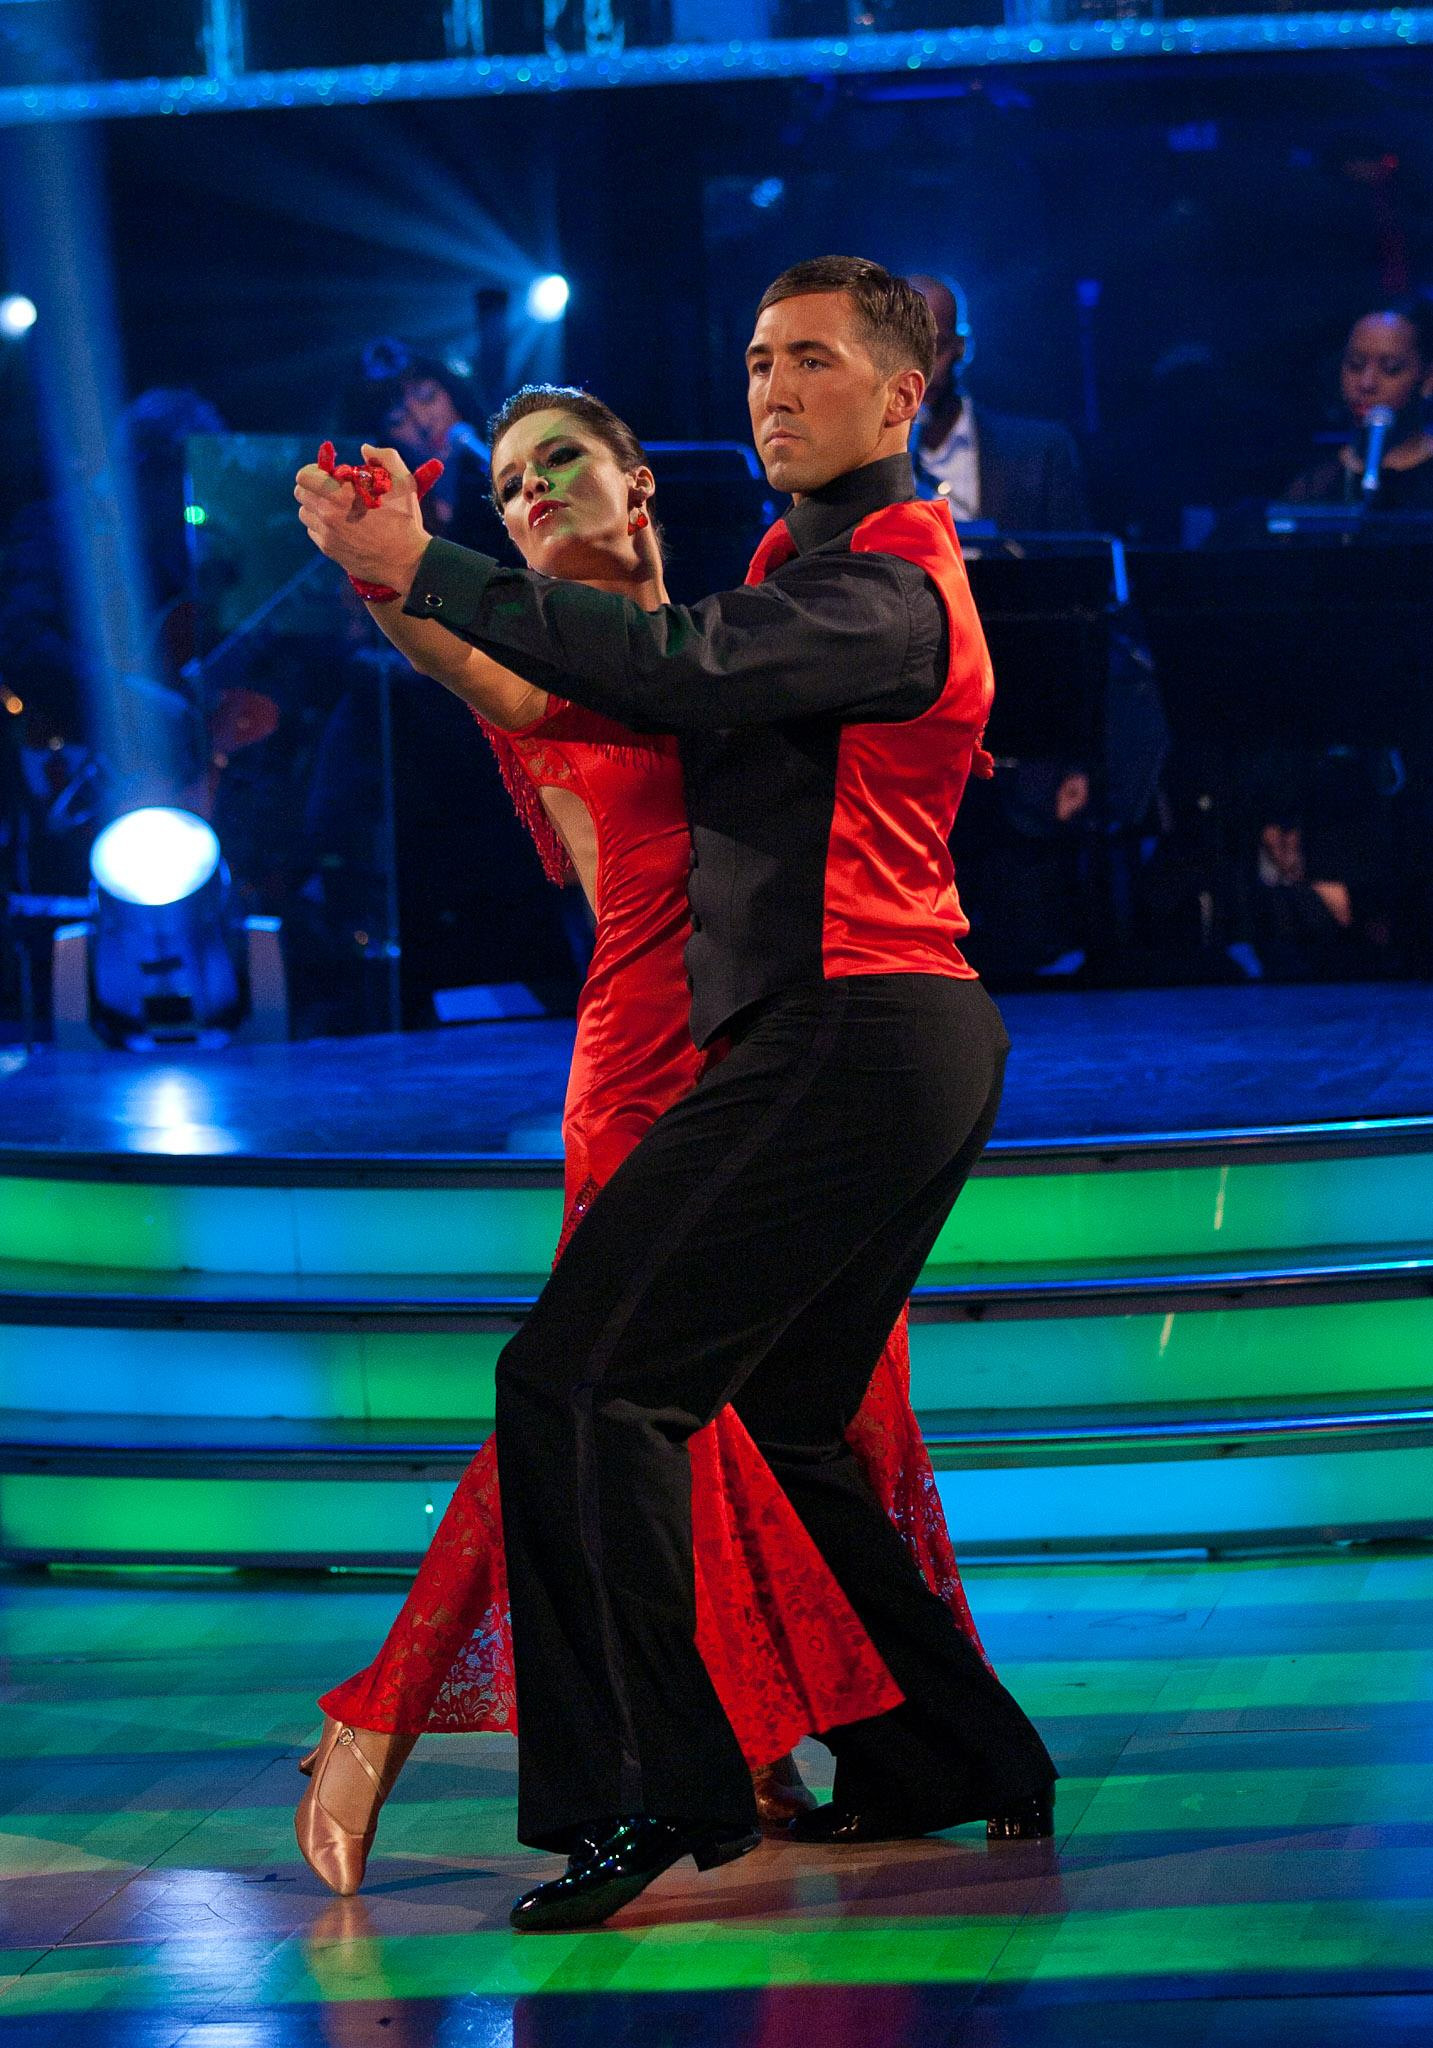 Gavin y Katya Virshilas bailando en 2010